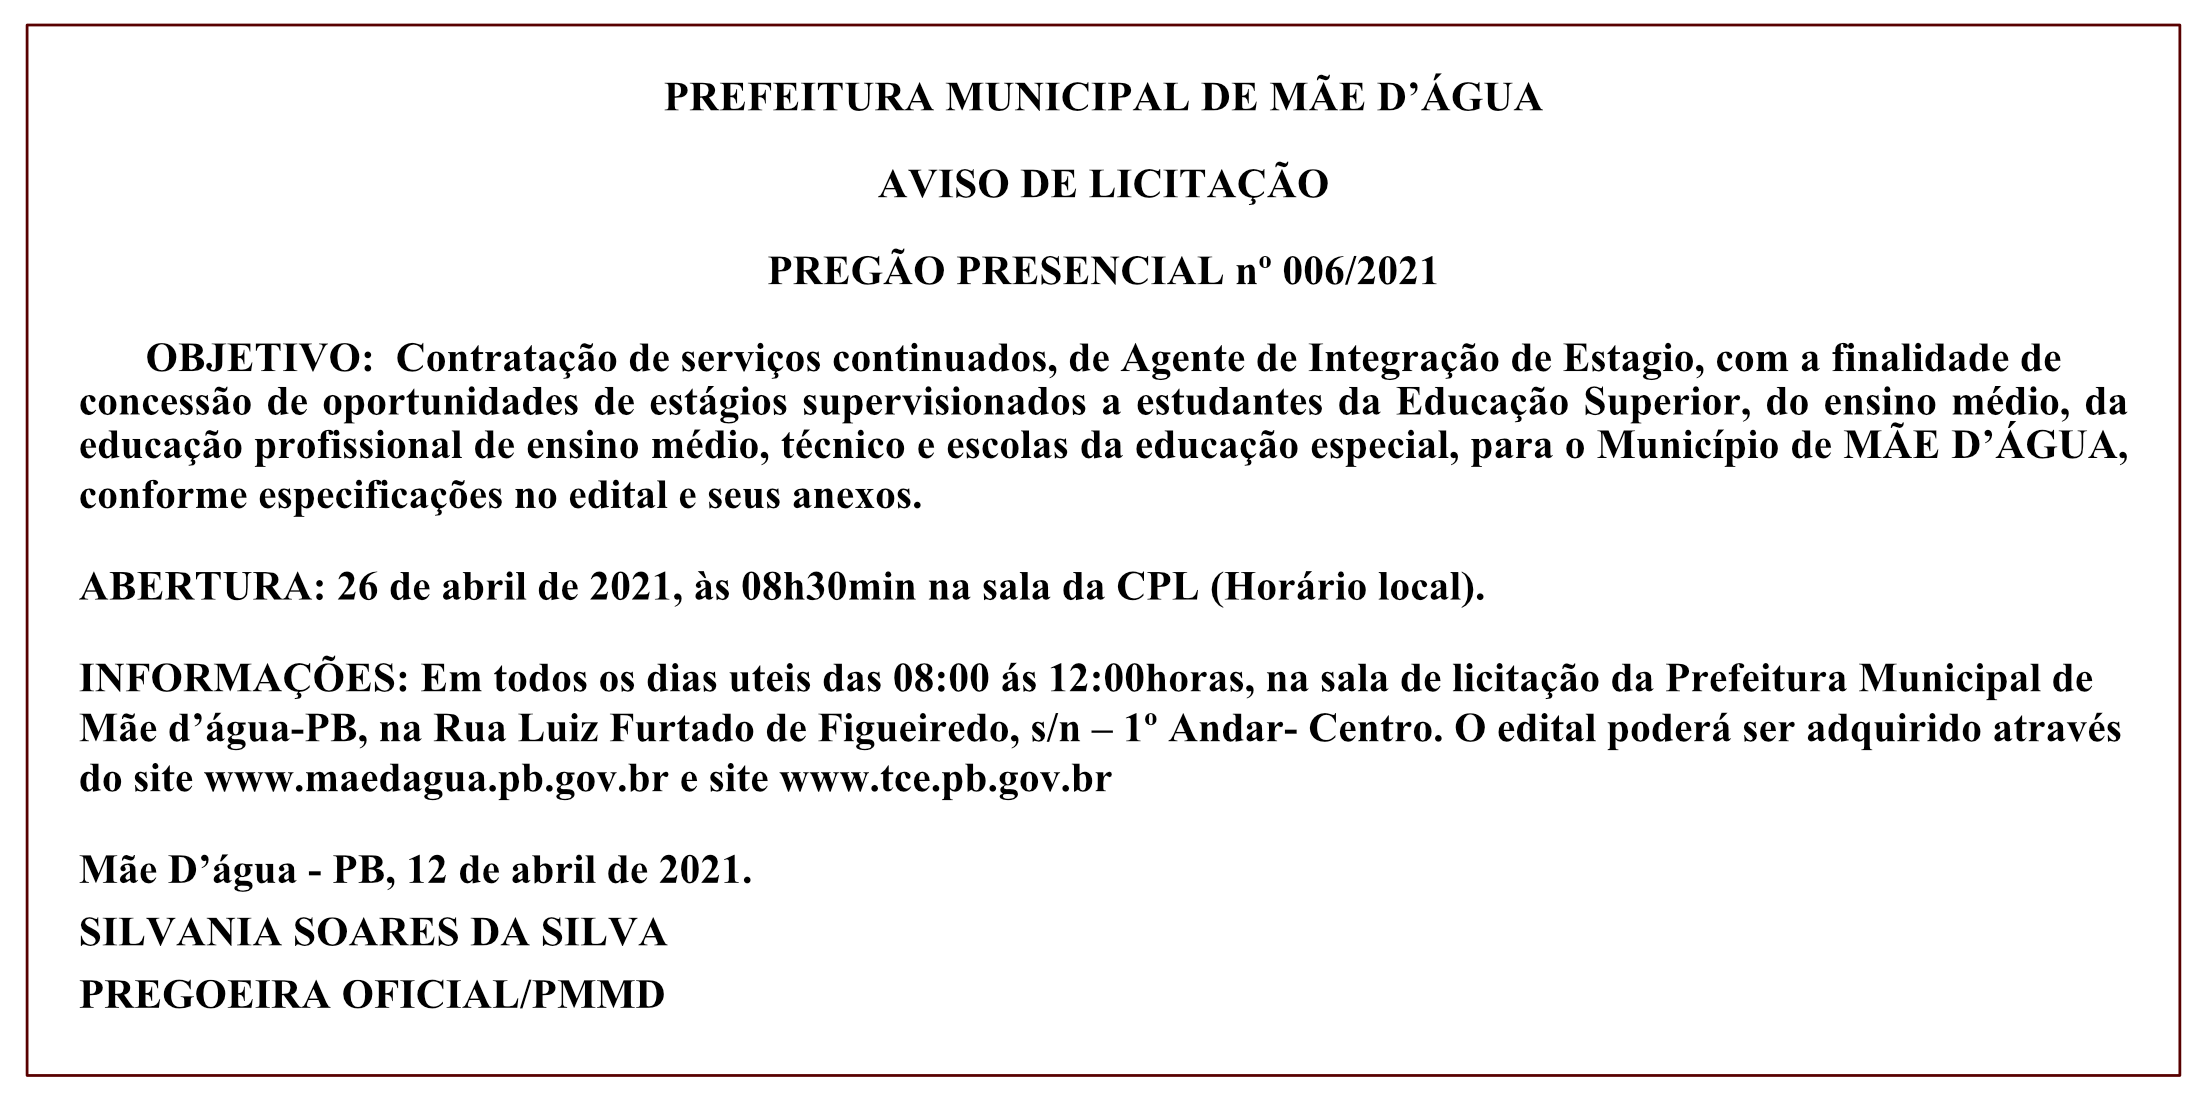 PREFEITURA MUNICIPAL DE MÃE D’ÁGUA – AVISO DE LICITAÇÃO – PREGÃO PRESENCIAL Nº 006/2021